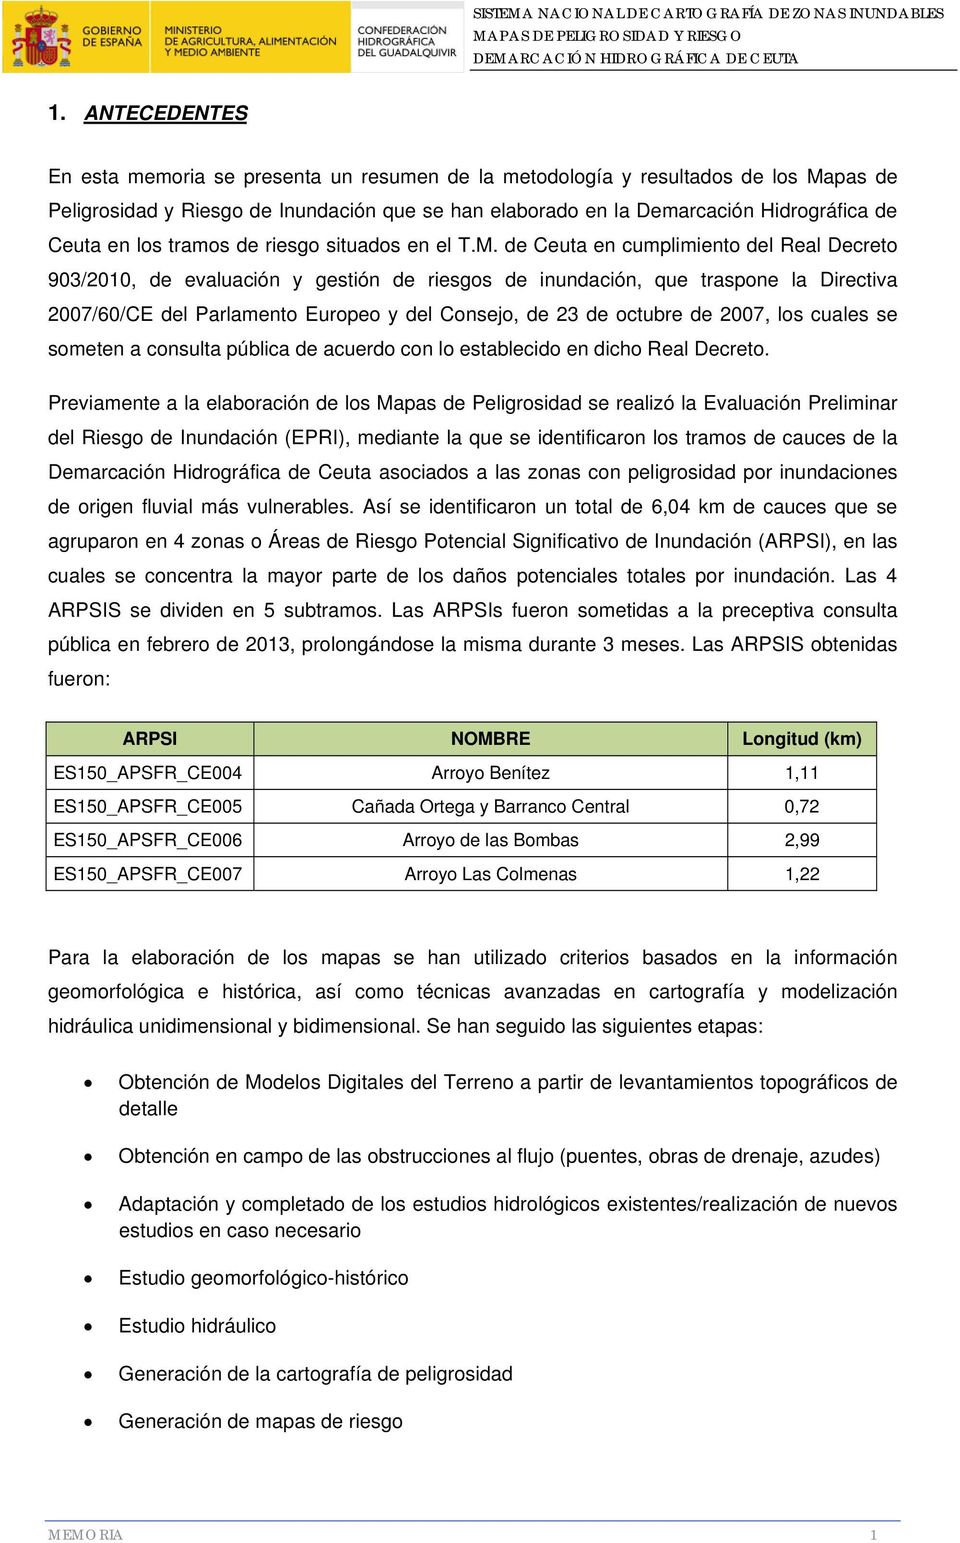 de Ceuta en cumplimiento del Real Decreto 903/2010, de evaluación y gestión de riesgos de inundación, que traspone la Directiva 2007/60/CE del Parlamento Europeo y del Consejo, de 23 de octubre de